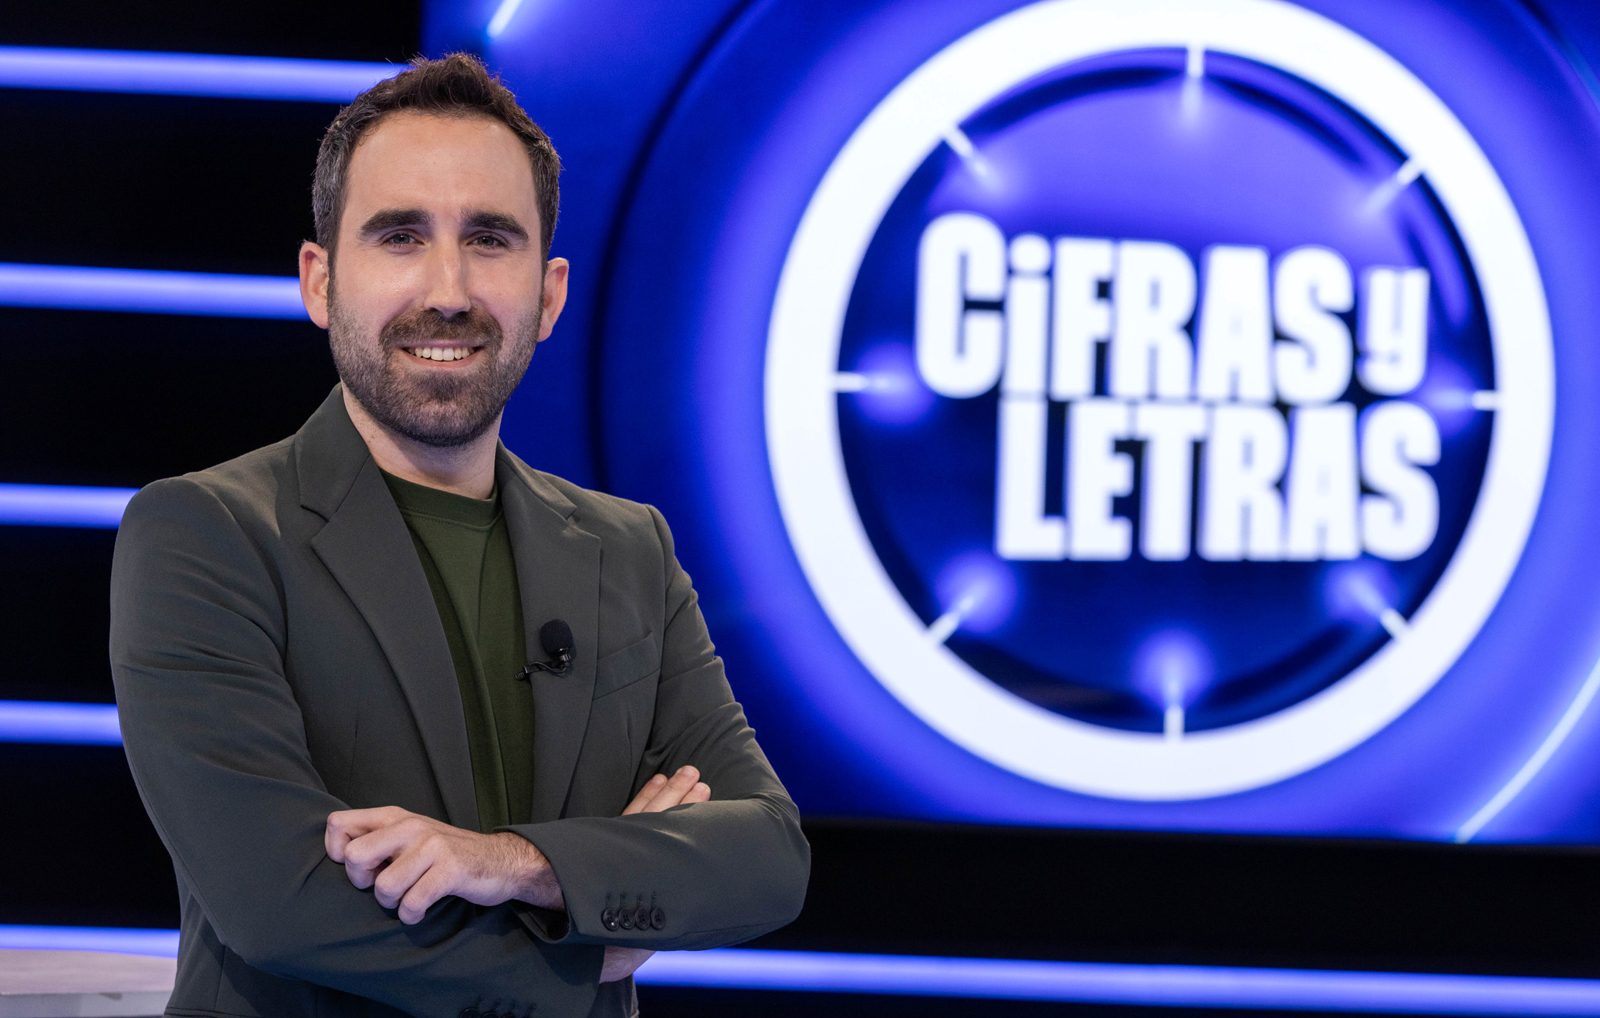 Cifras y letras prepara su regreso a RTVE con Aitor Albizua como presentador